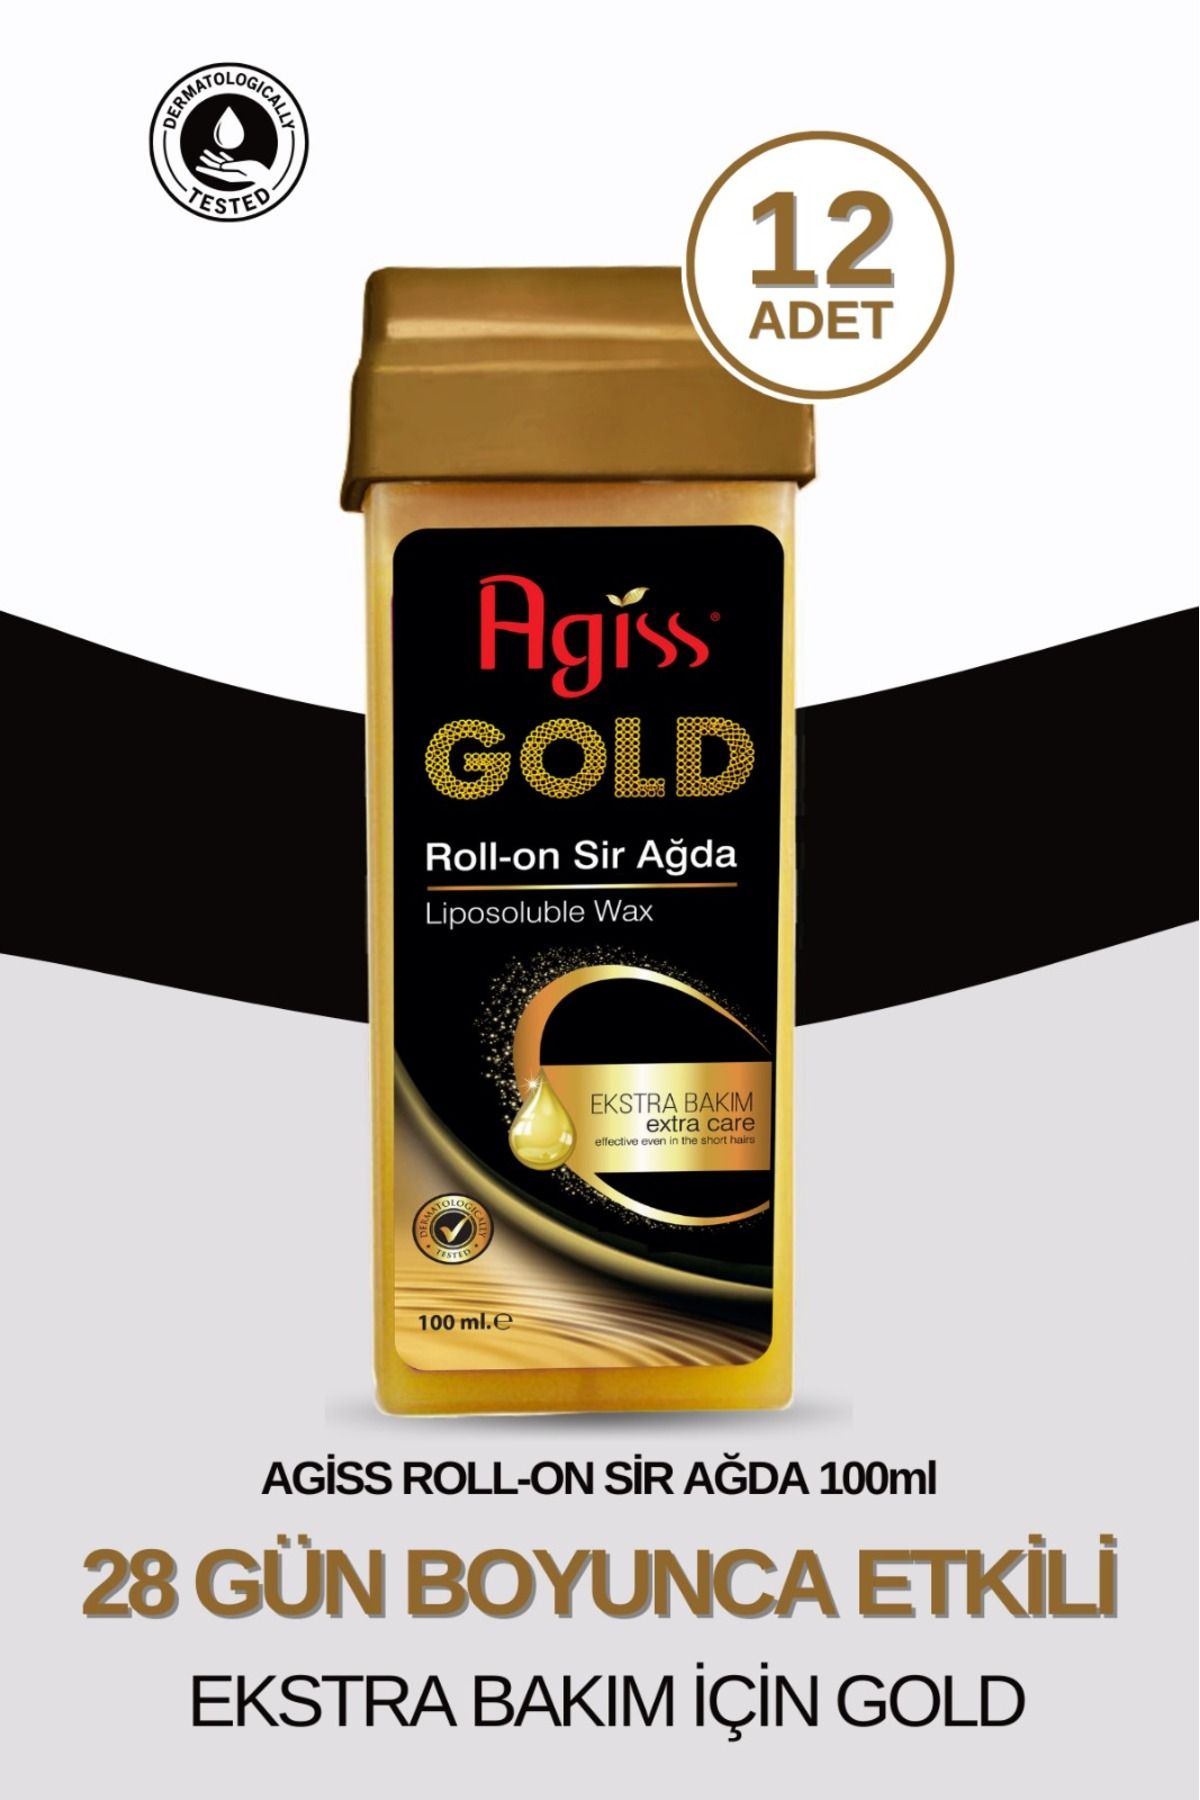 AGISS Roll On Gold Ekstra Bakım Sir Ağda 100 ml Tüm Cilt Tipleri Için Özel Formül 12 Adet